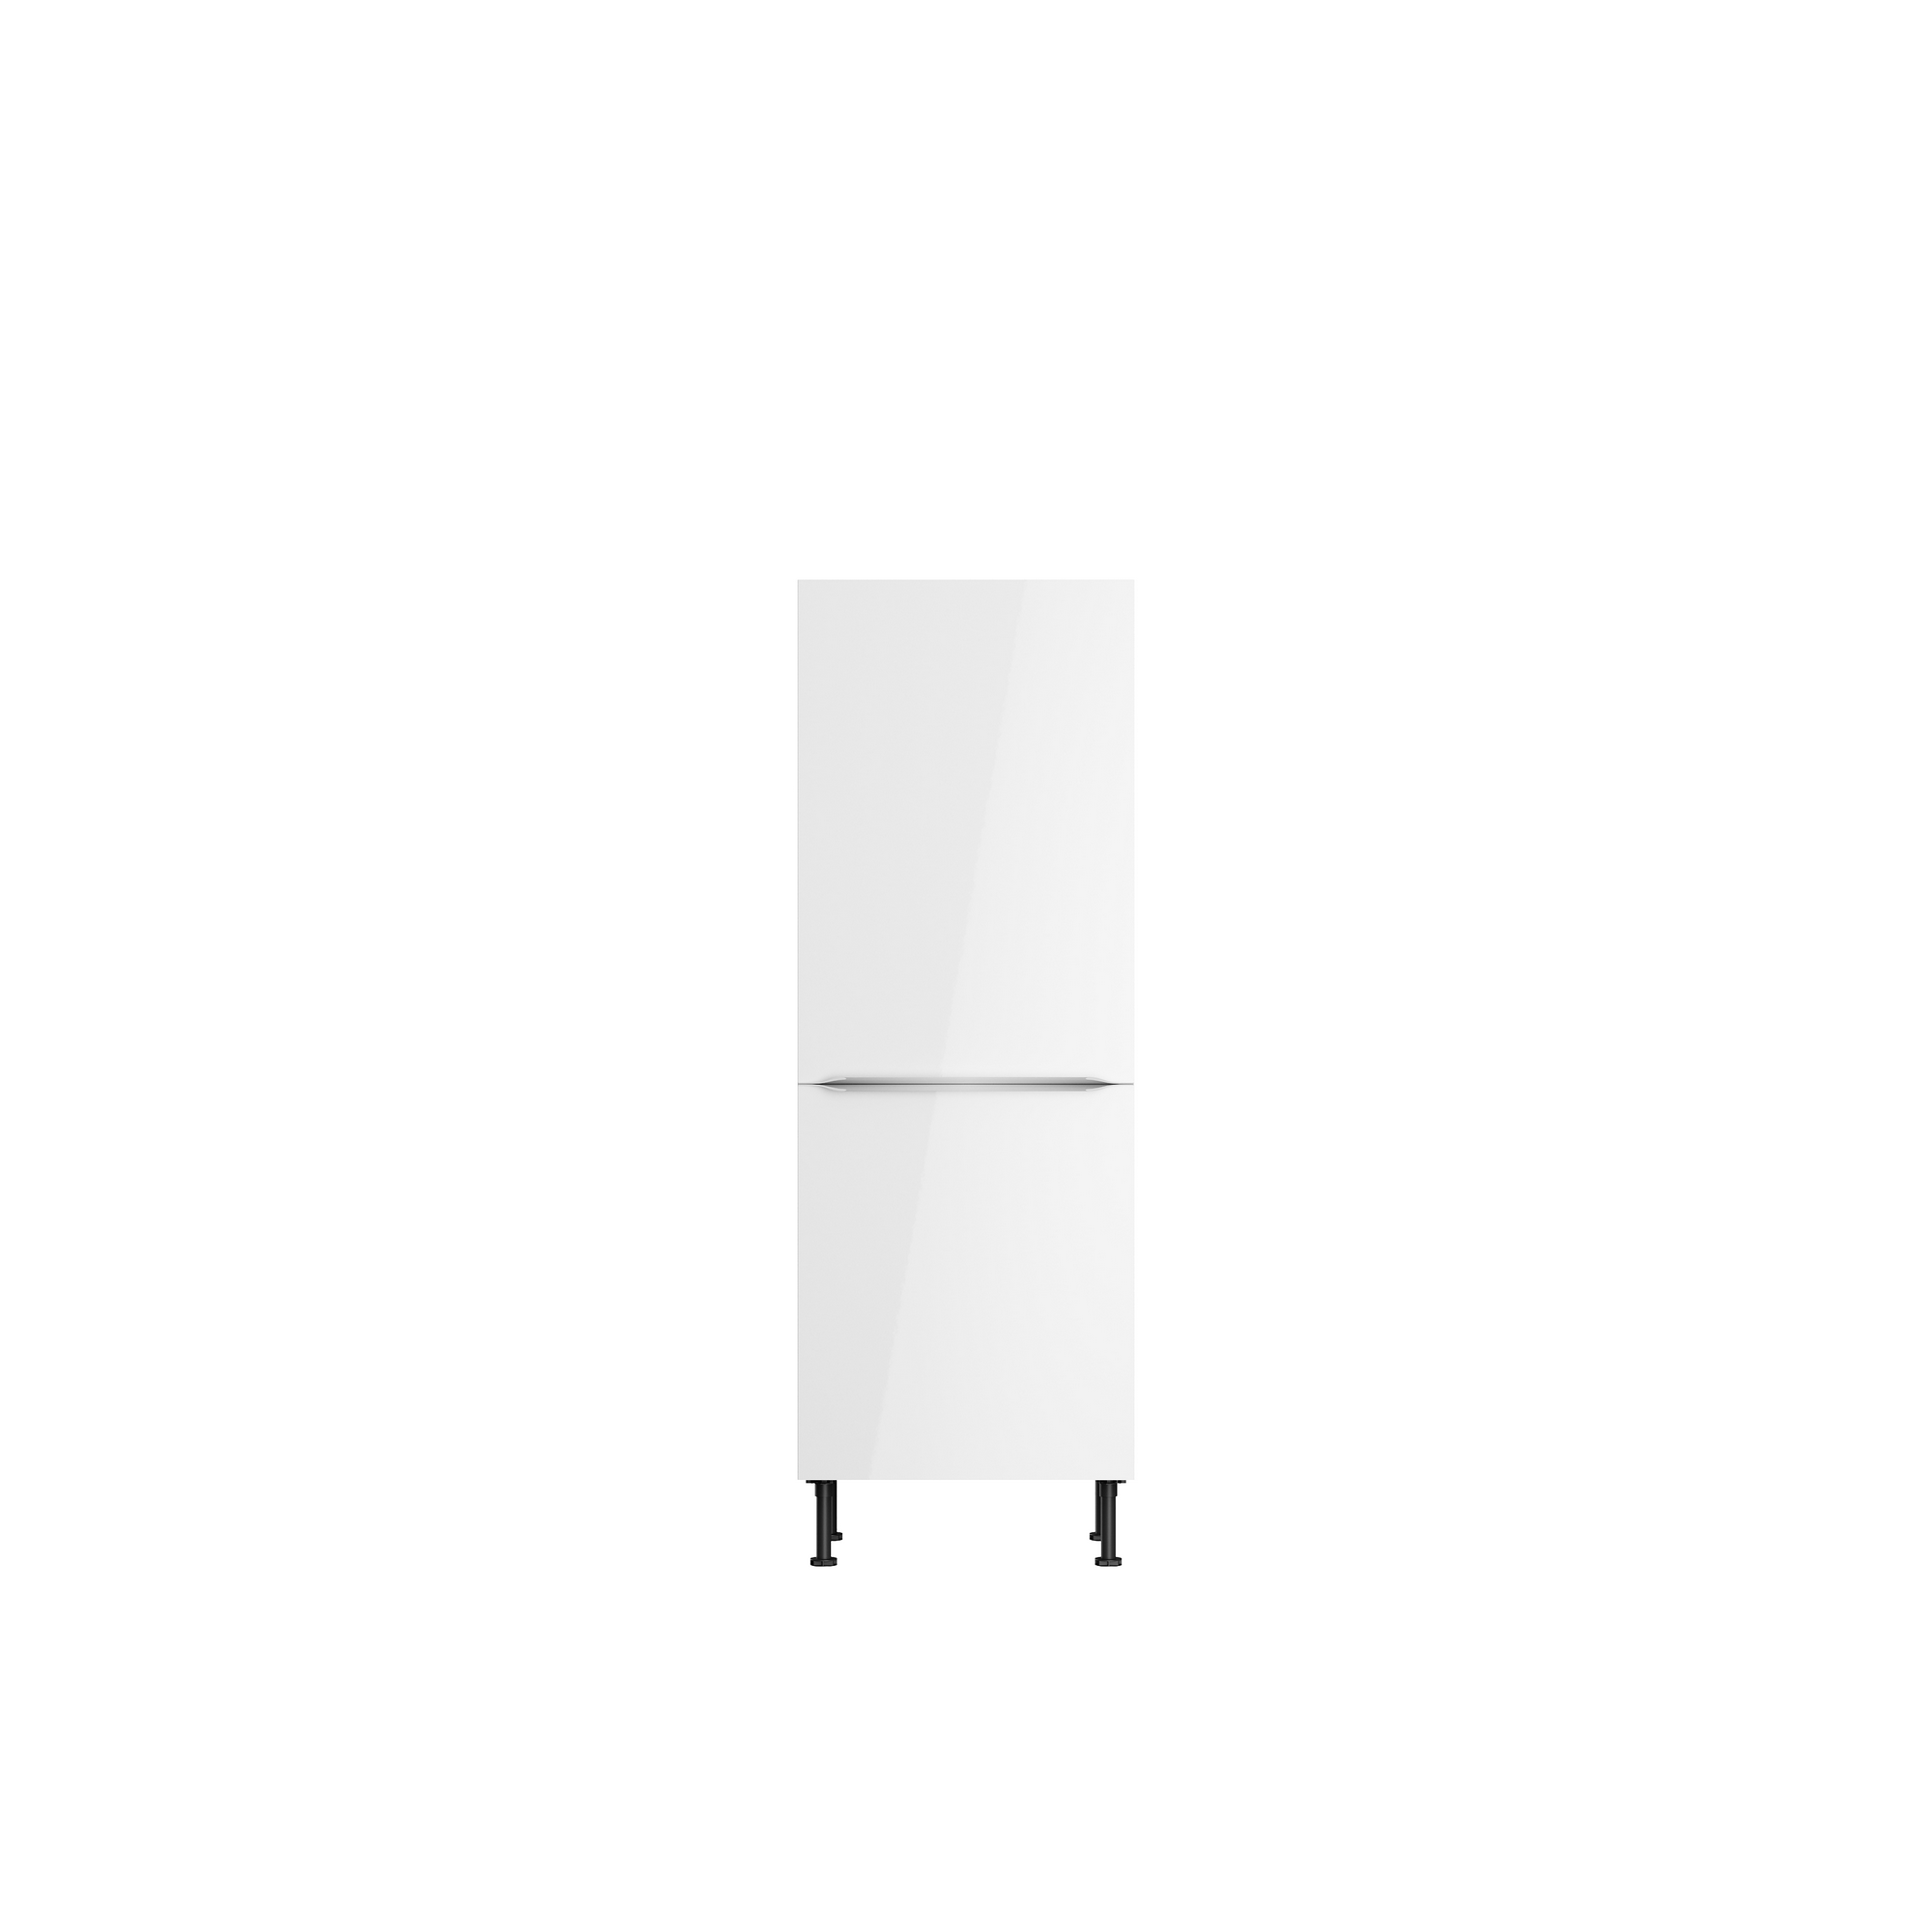 Midischrank für Einbaukühlschrank 'Optikomfort Arvid986' weiß 60 x 176,6 x 58,4 cm + product picture